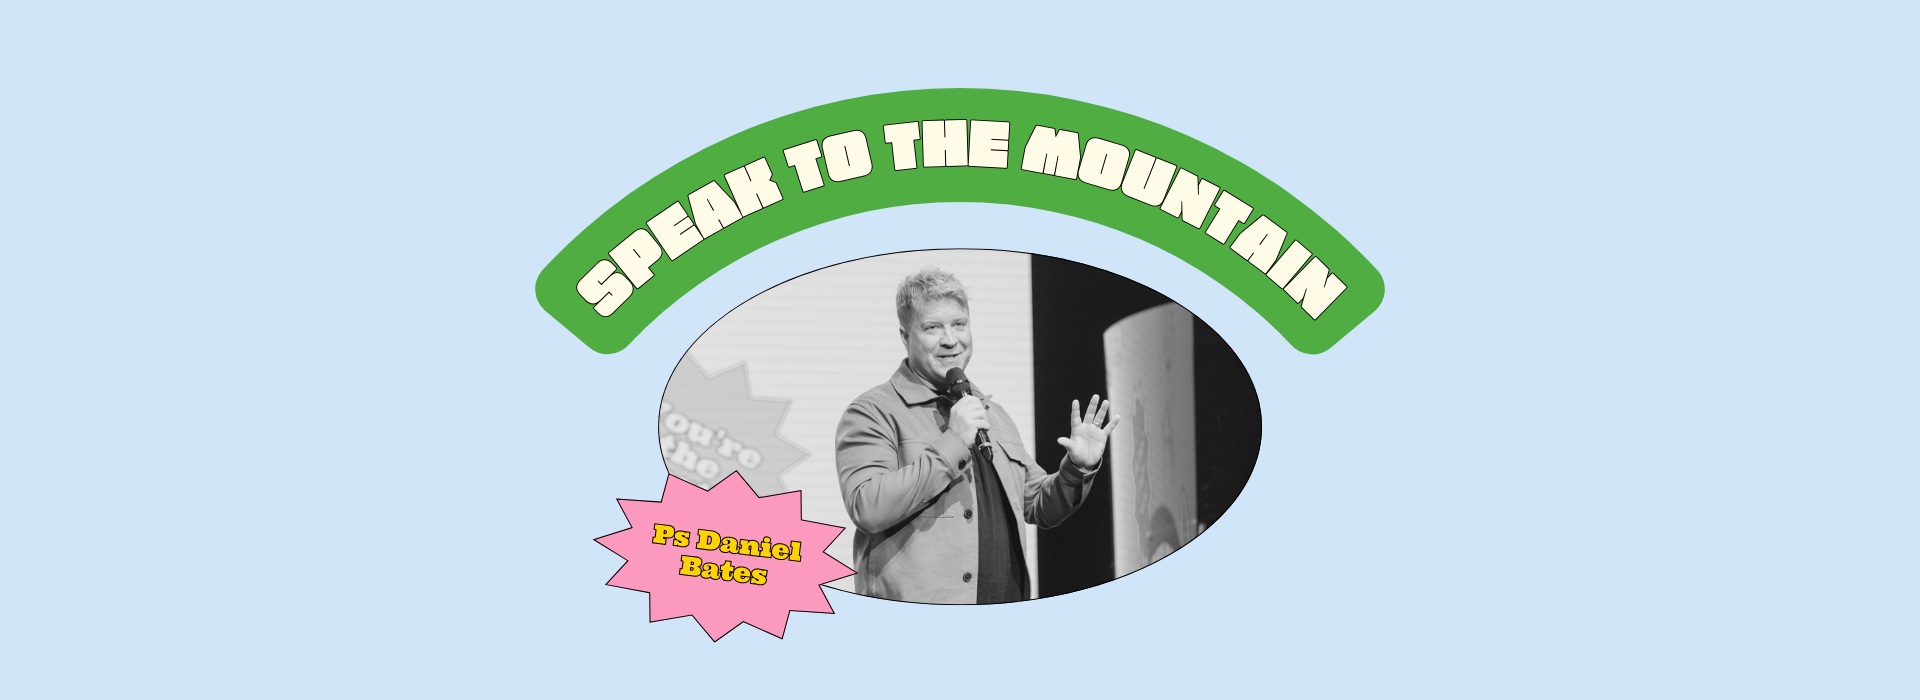 Speak To The Mountain